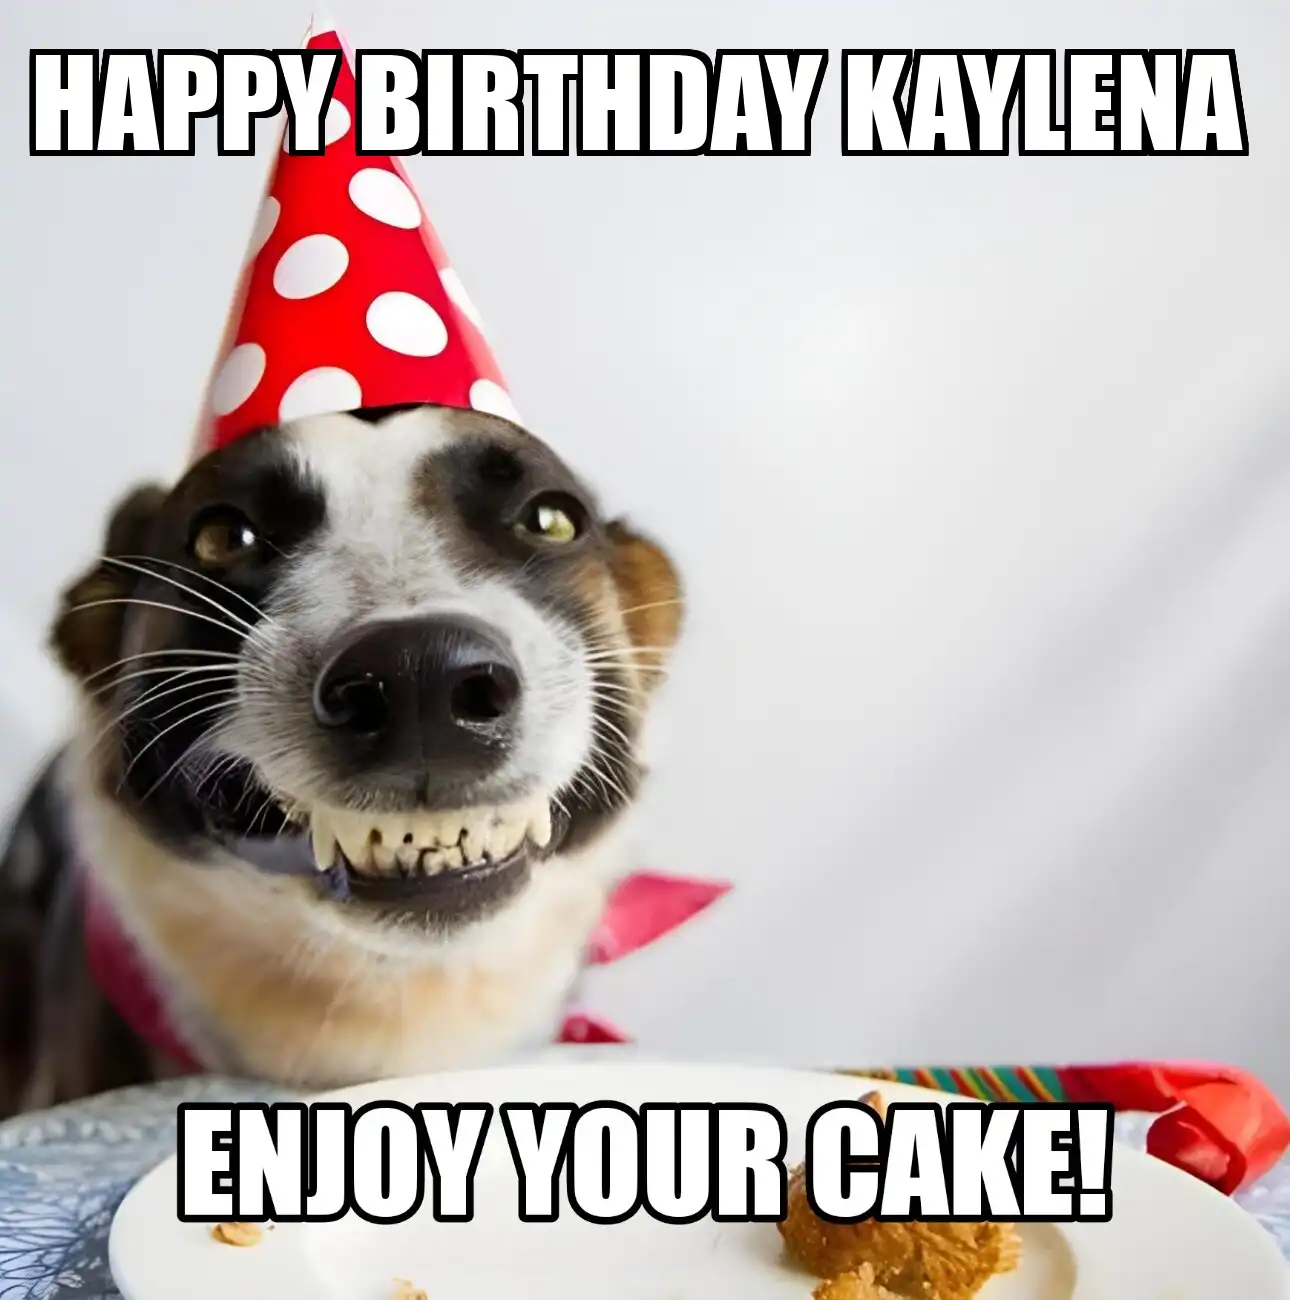 Happy Birthday Kaylena Enjoy Your Cake Dog Meme